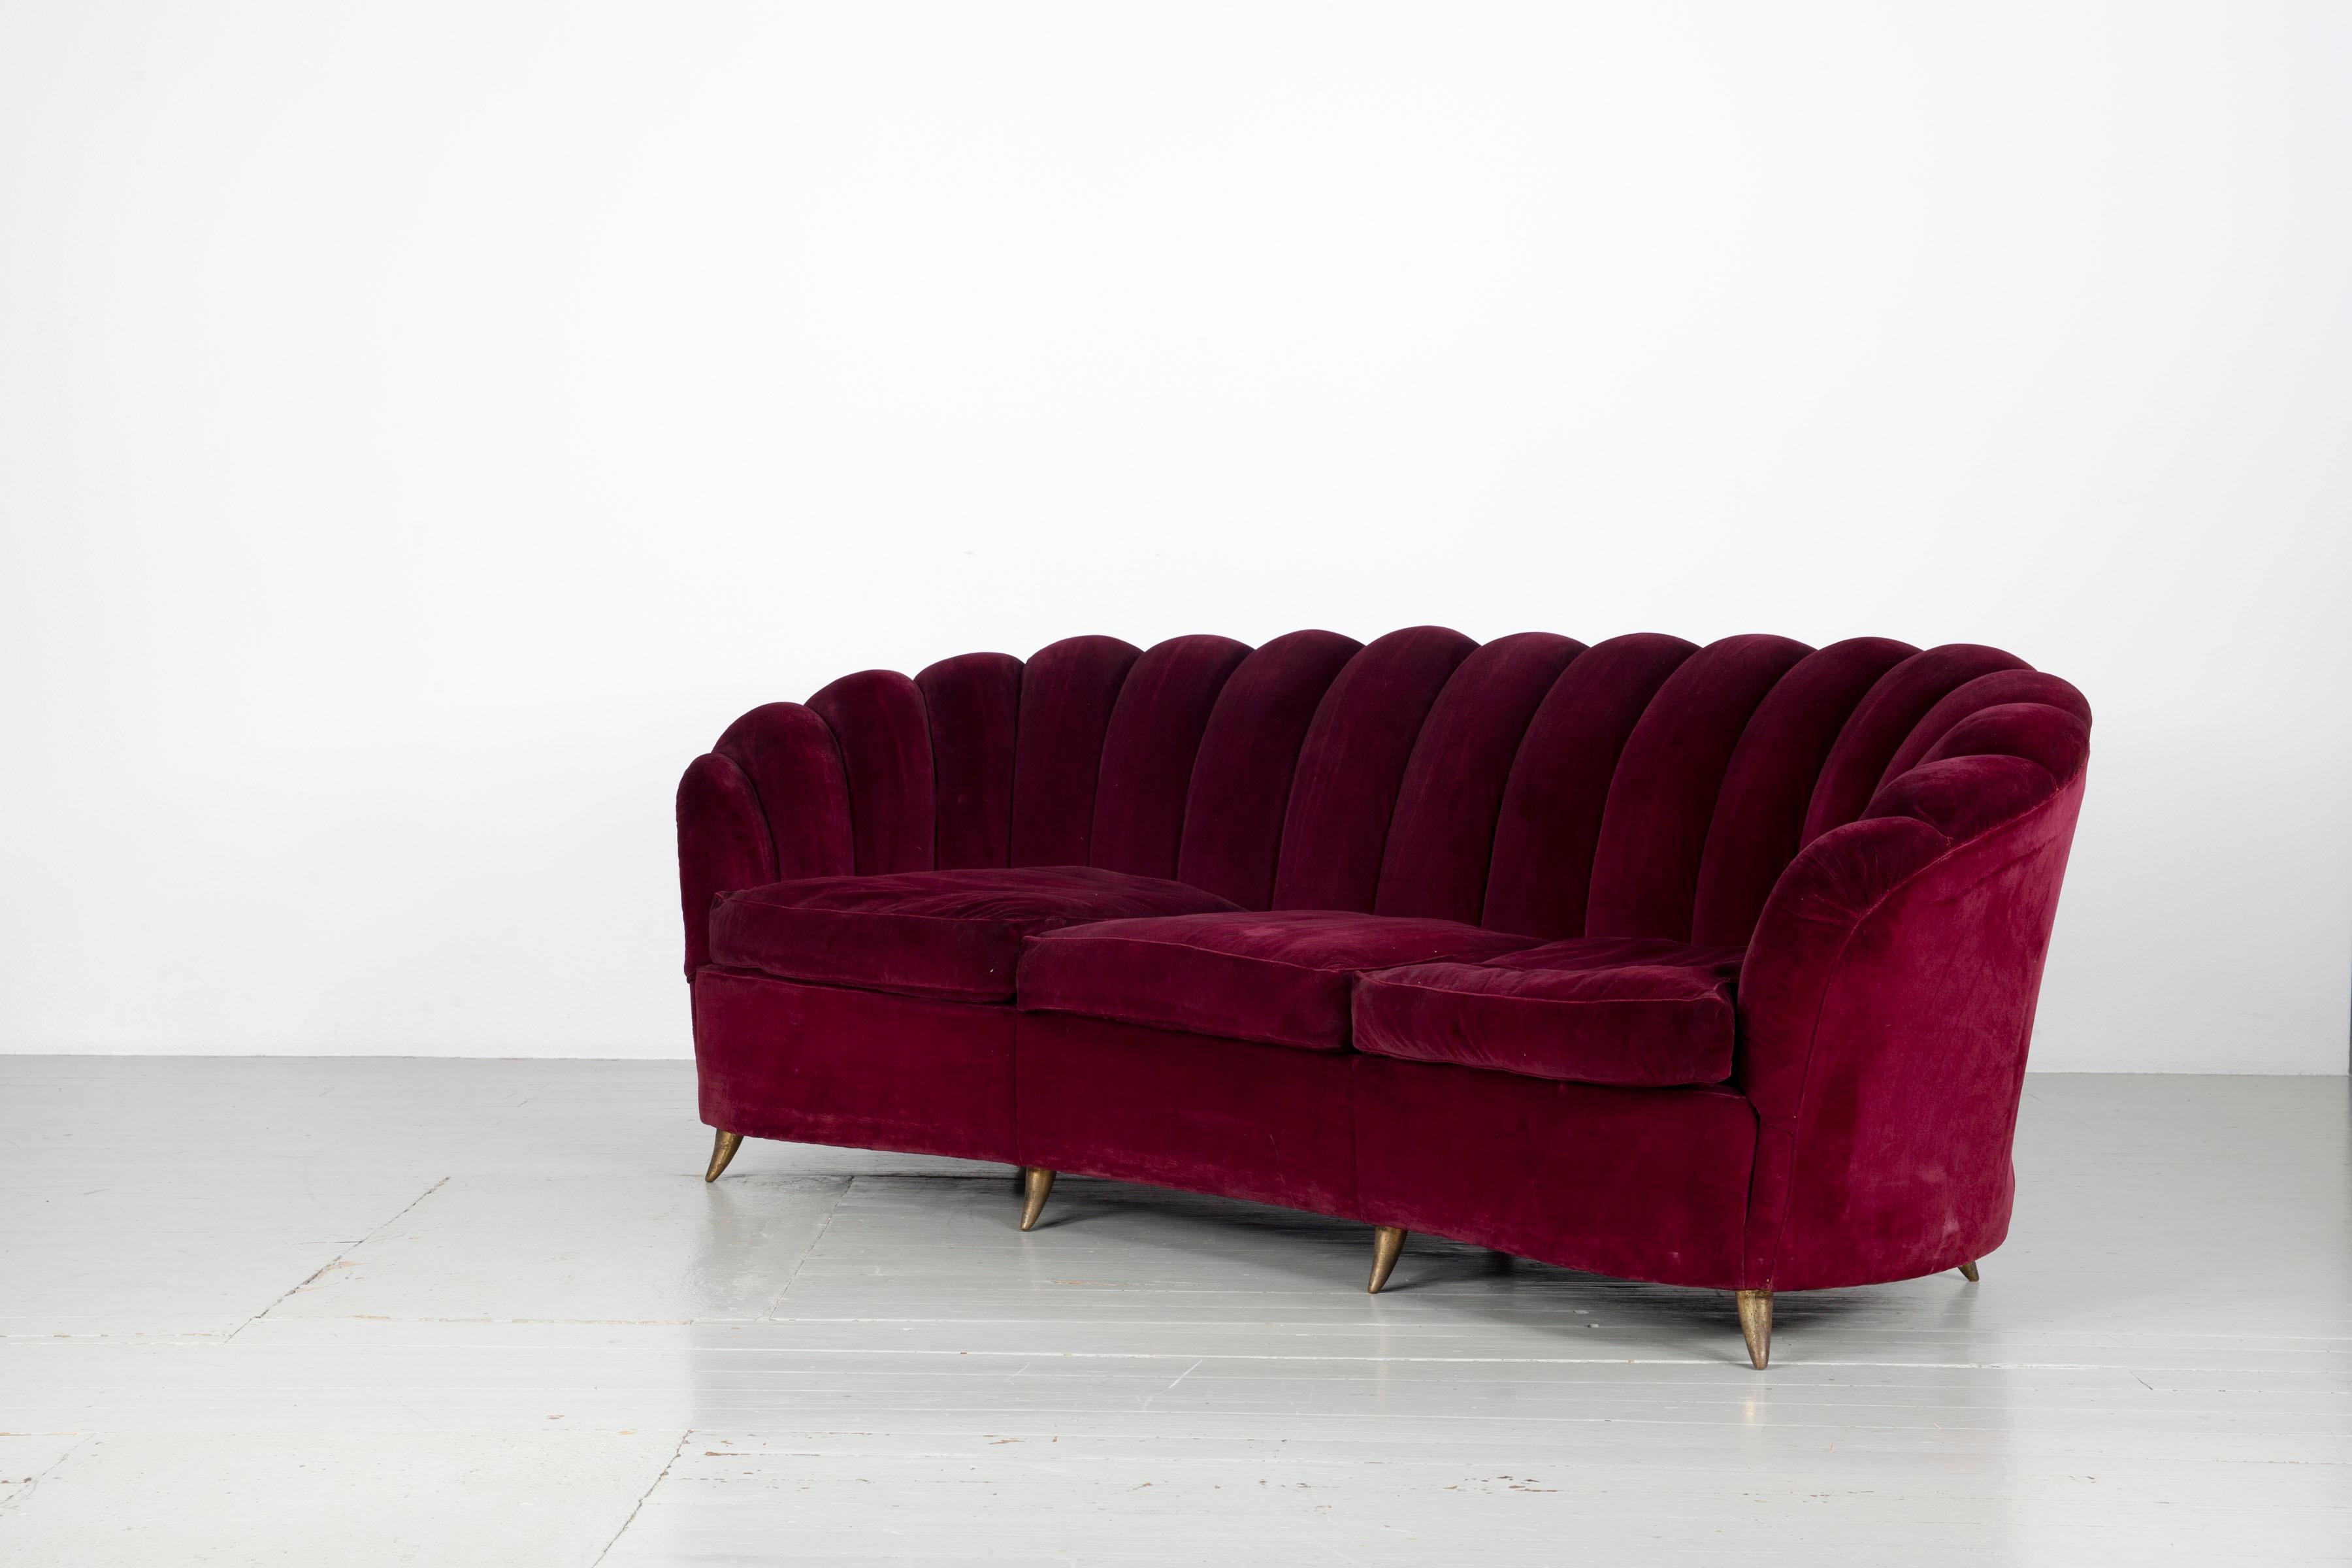 Ensemble de canapés conçu et fabriqué par ISA Bergamo dans les années 1950. L'ensemble, dont les pieds sont en aluminium moulé laqué or, se compose d'un canapé incurvé, de deux fauteuils et de deux chaises d'appoint plus petites. La sellerie